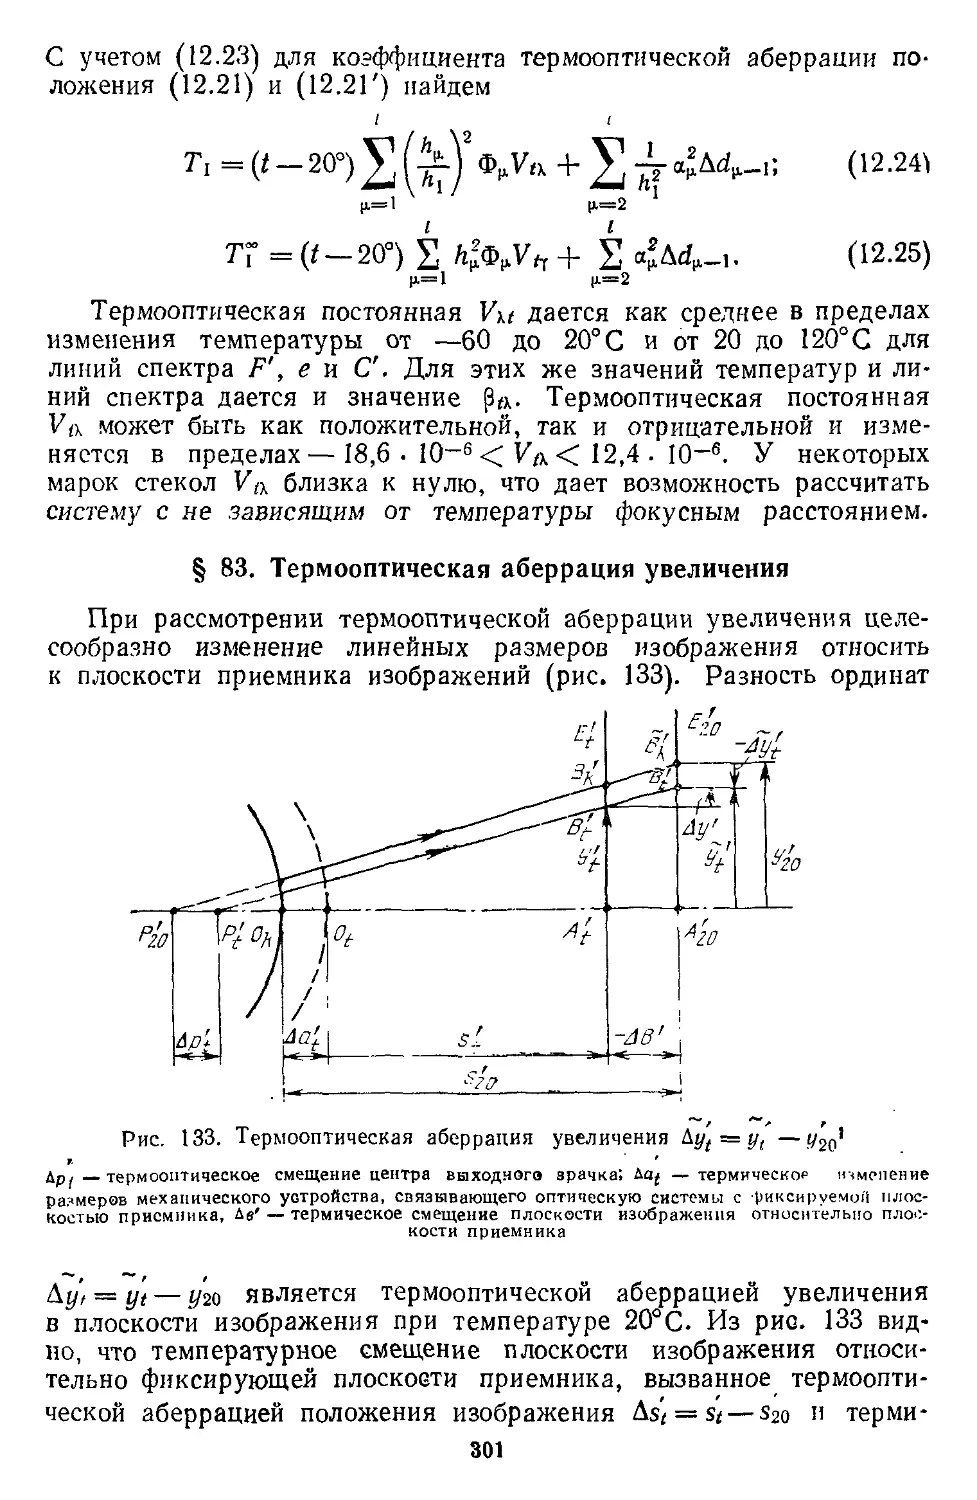 § 83. Термооптическая аберрация увеличения